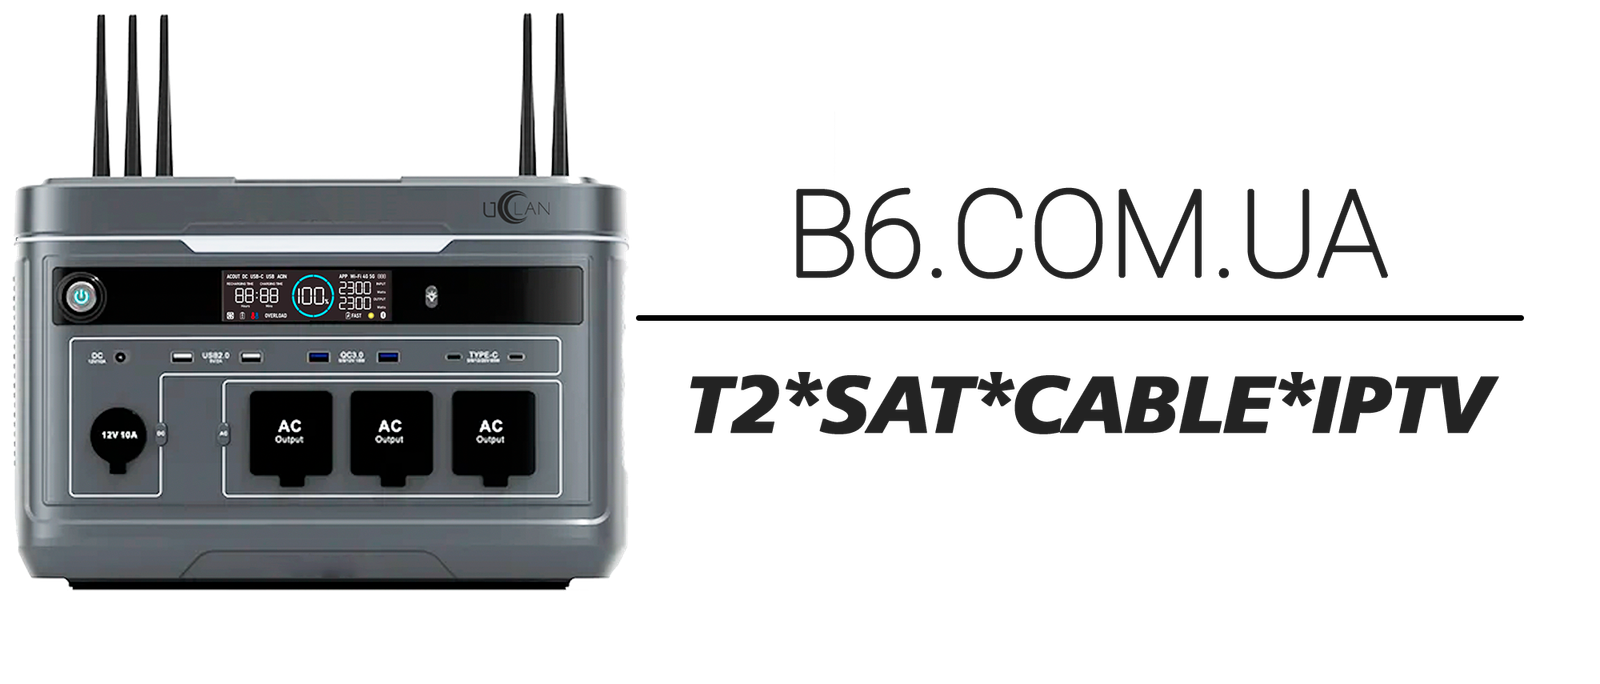 B6.COM.UA - електронне обладнання для супутникового, ефірного, кабельного та IPTV телебачення, системи електроживлення